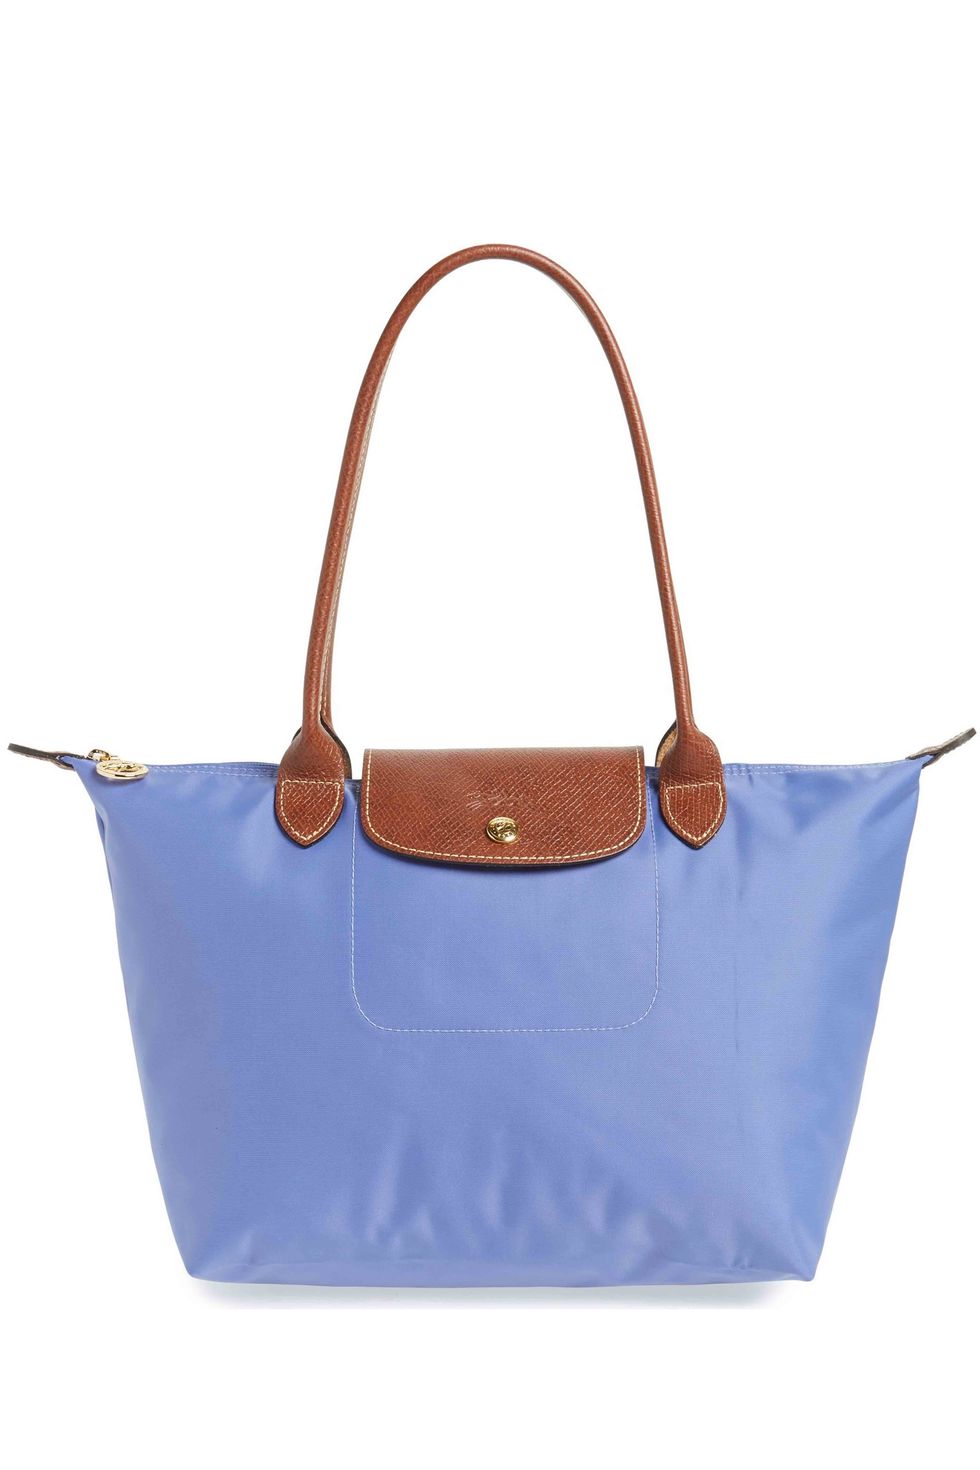 Longchamp Mademoiselle Leather Bucket Bag on SALE